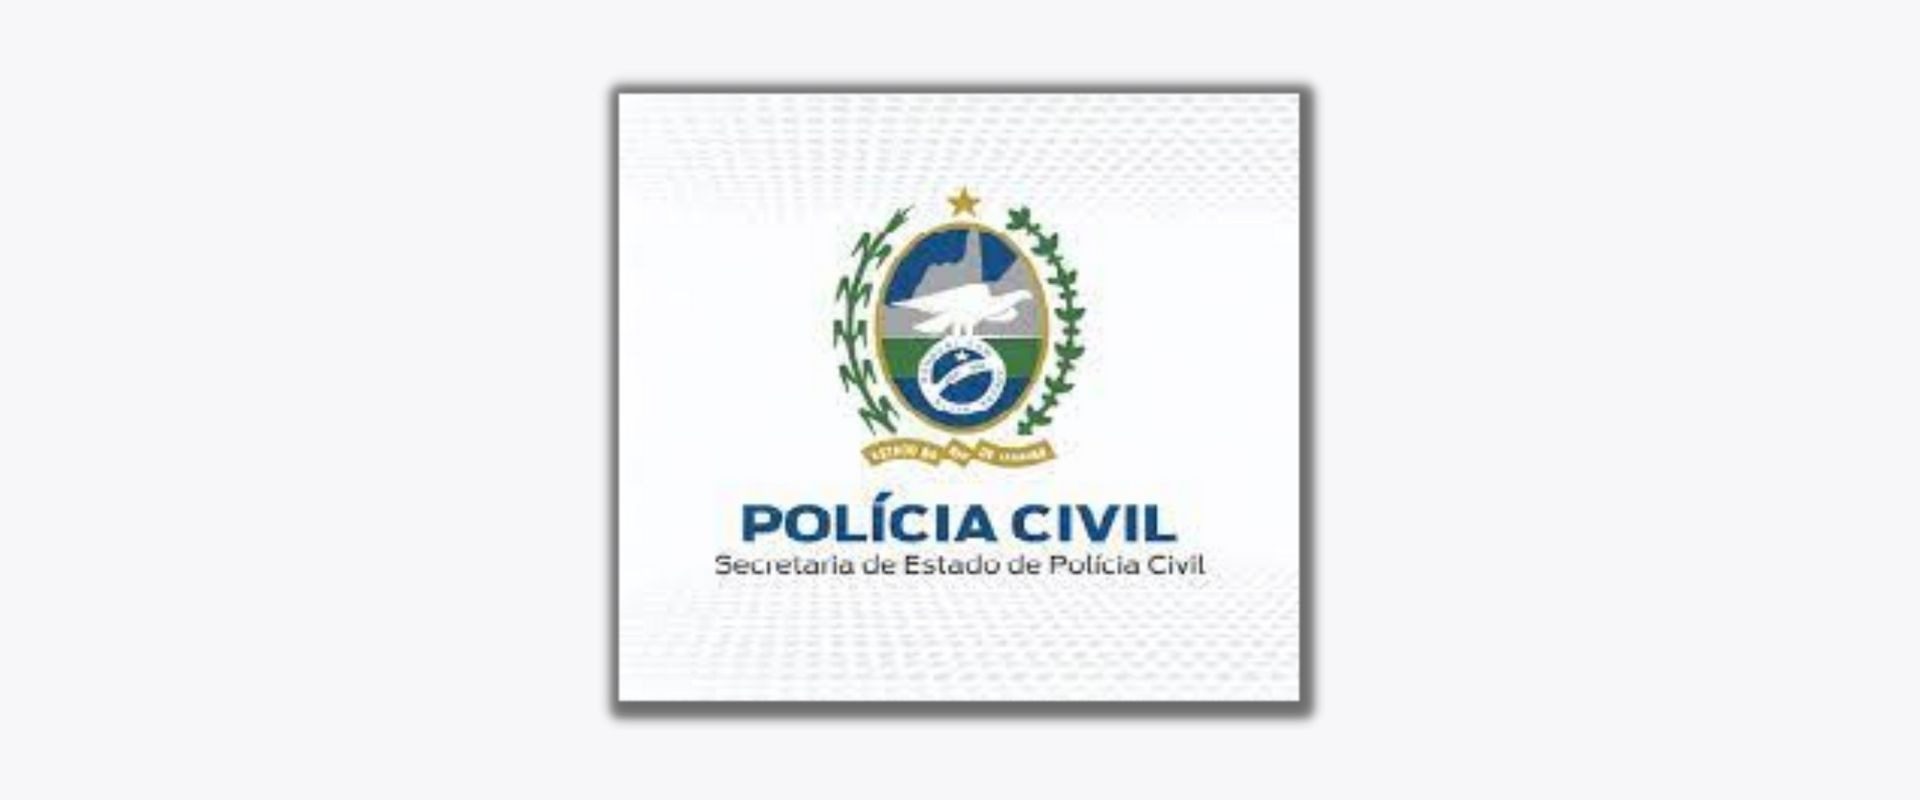 Ex-aluno do Coppead assume a Secretaria de Polícia Civil do RJ